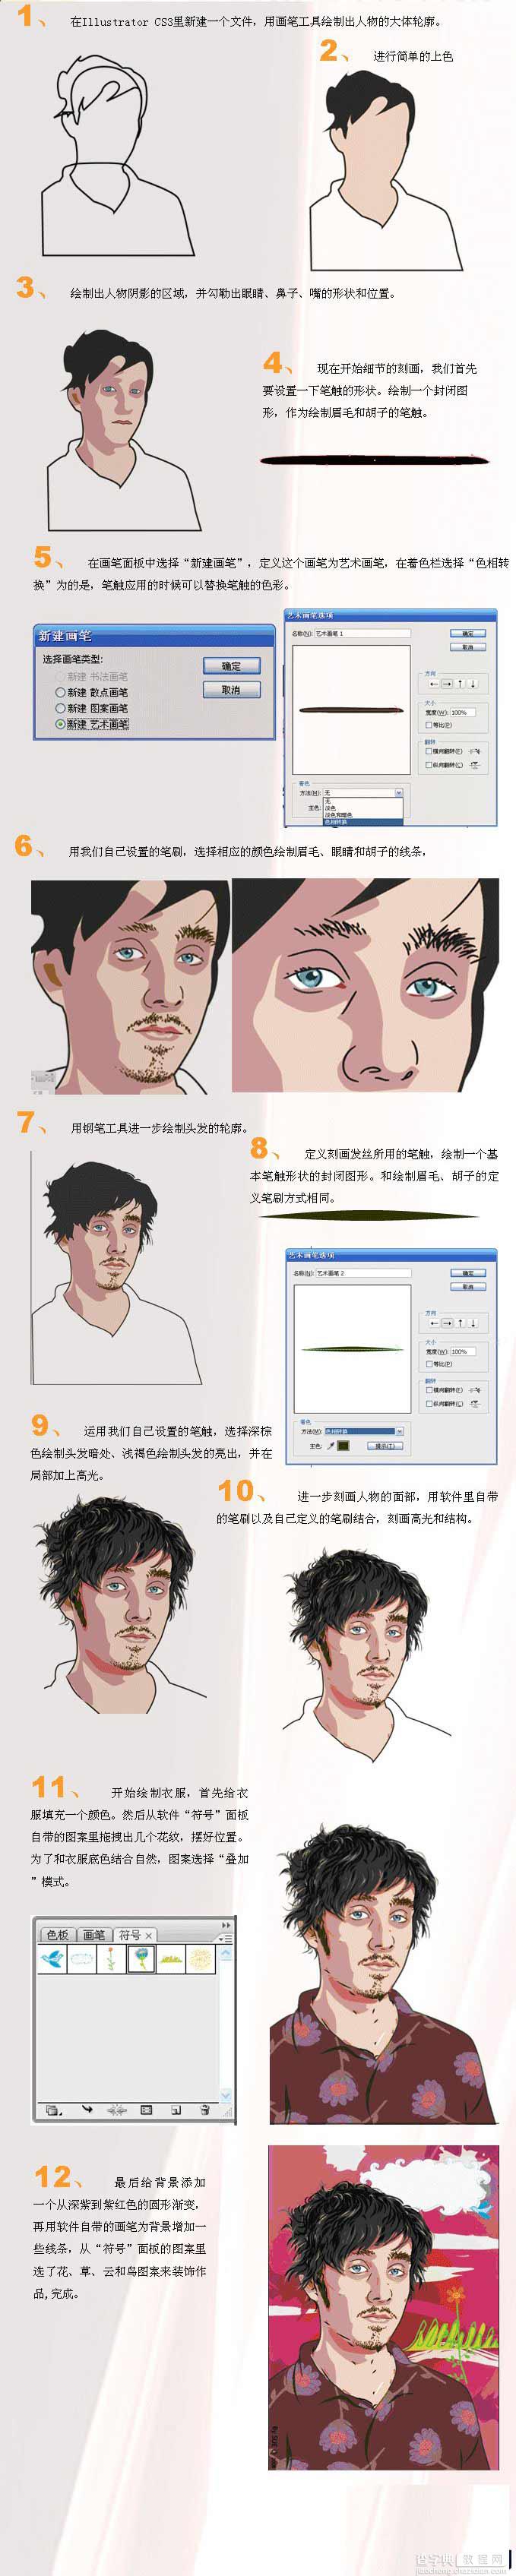 AI画笔工具绘制男性人物肖像教程1